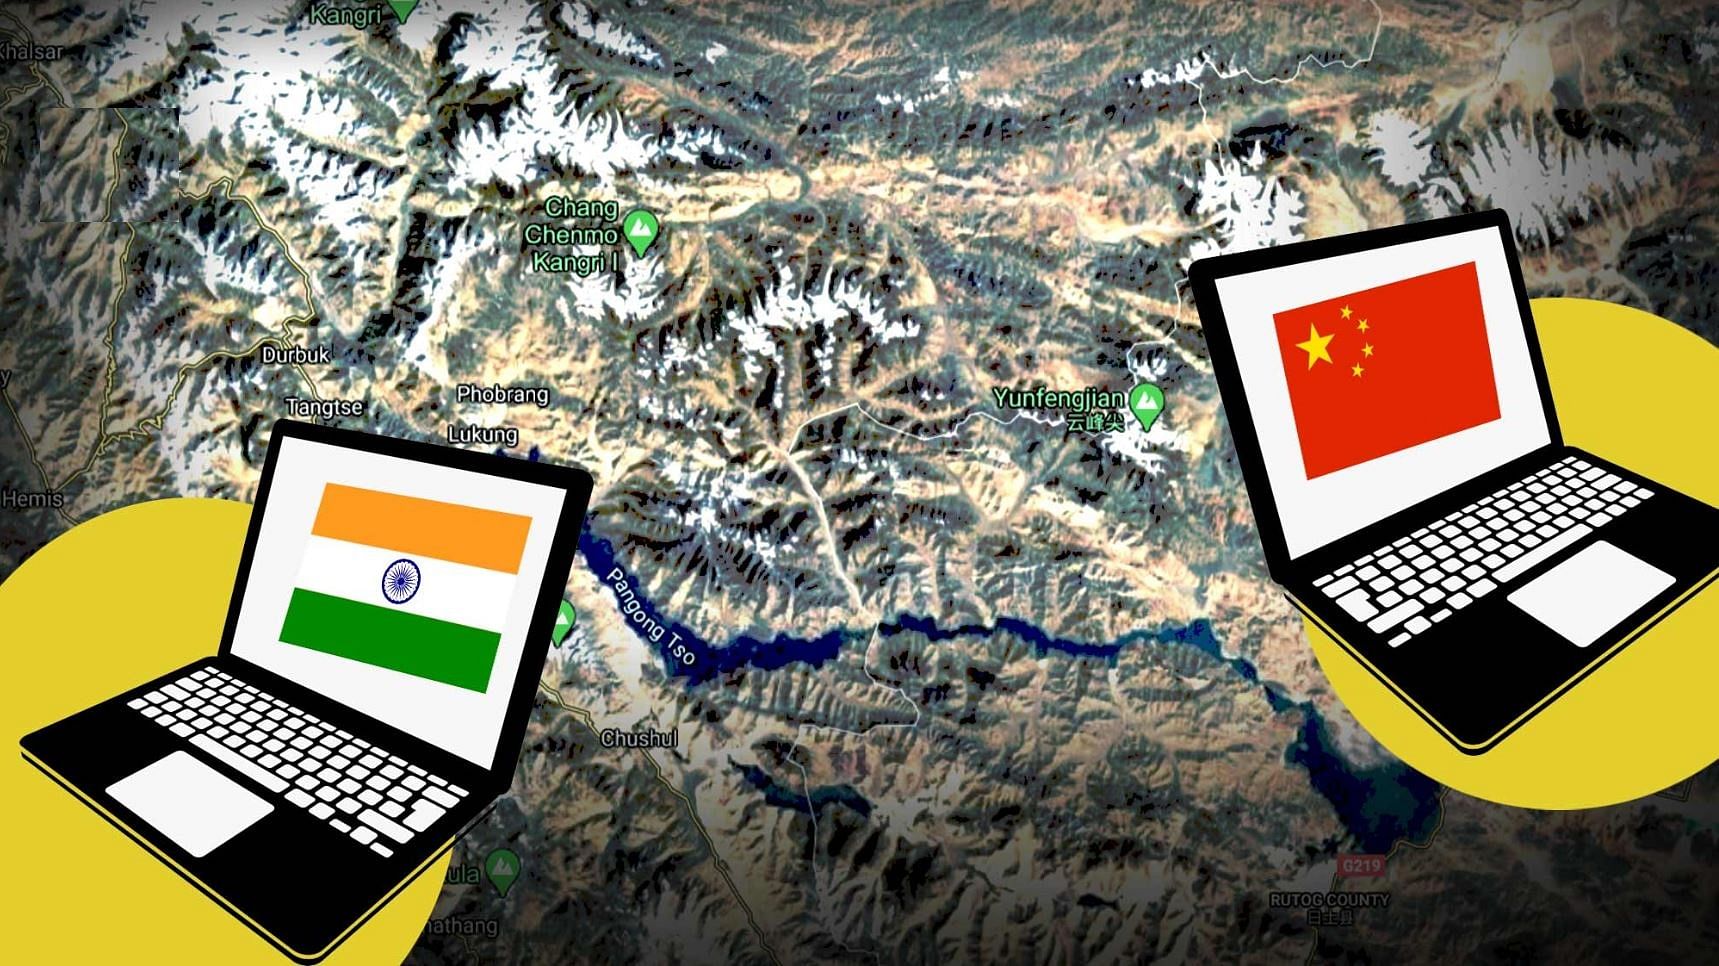 गलवान घाटी में चीन और भारत के बीच हिंसक झड़प के बाद चीन से साइबर हमले का खतरा